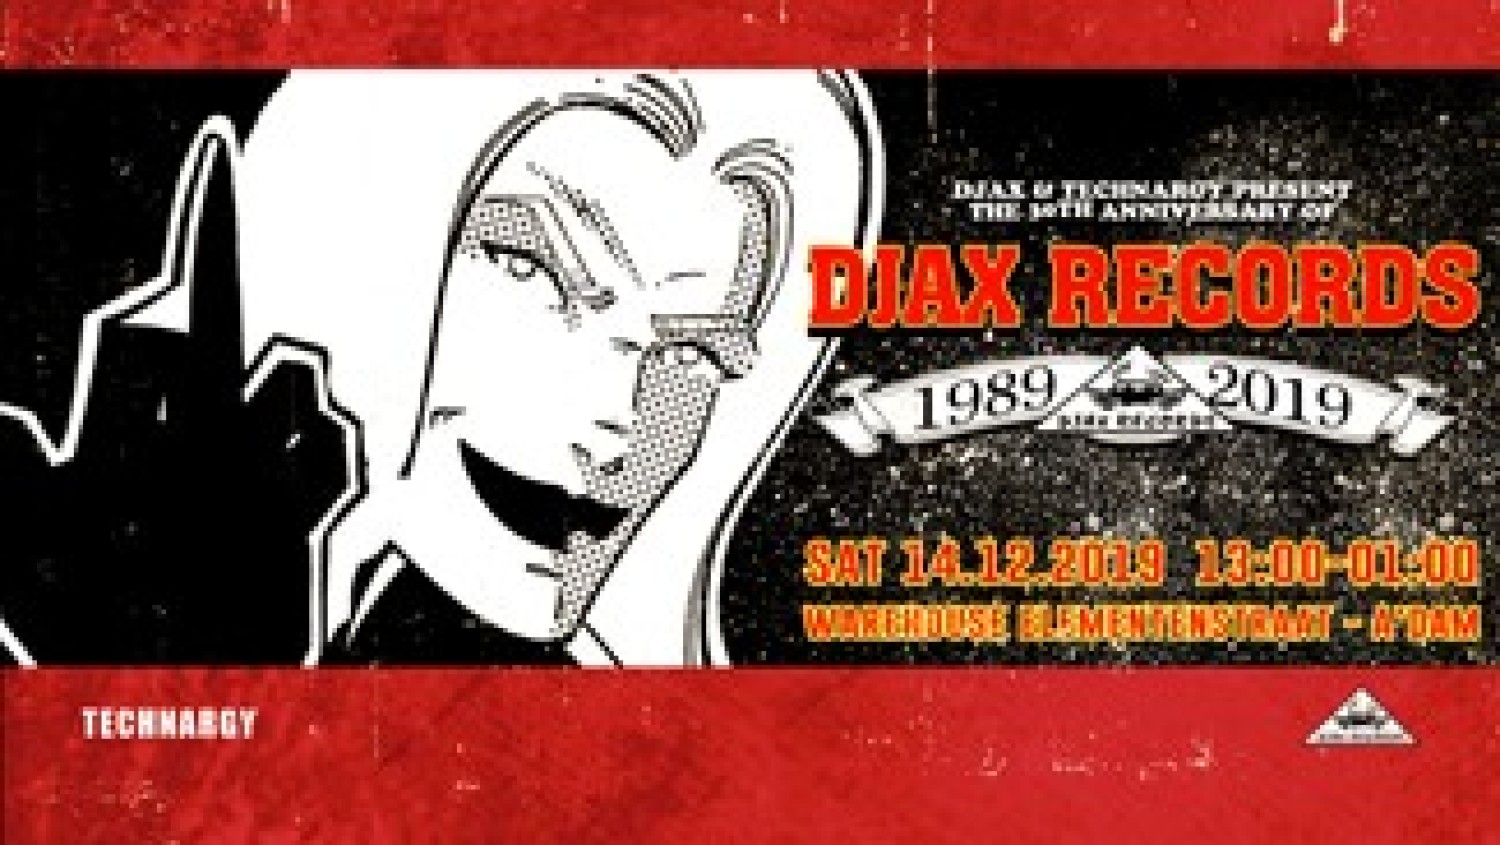 Party nieuws: Dertigjarig bestaan Djax Records!